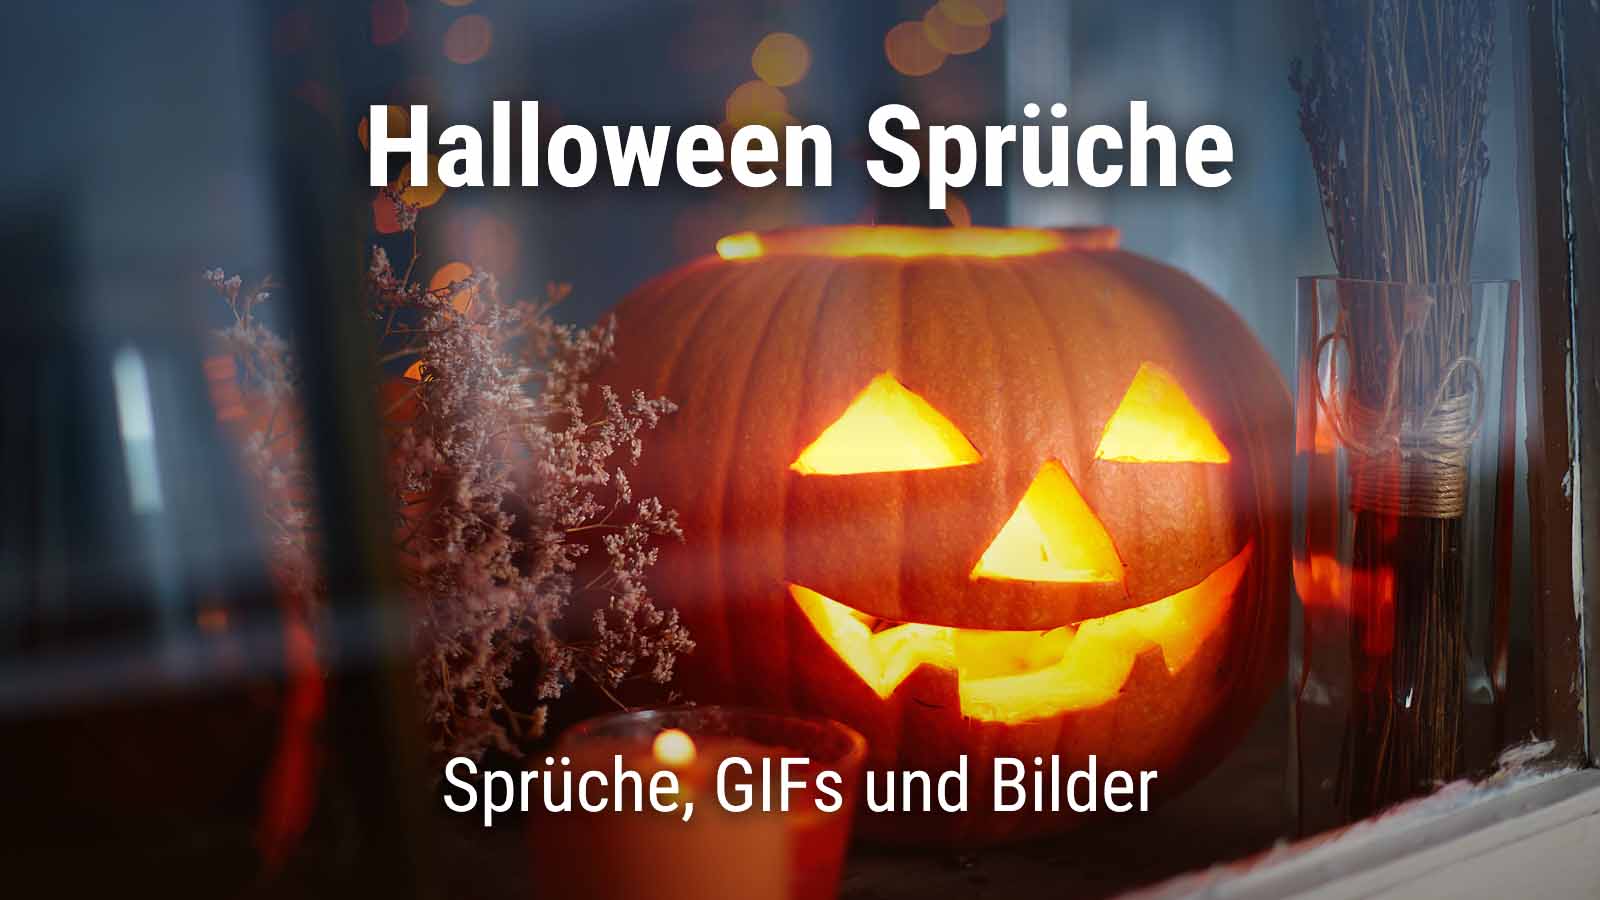 Halloweenkürbis mit Text "Halloween Sprüche. Sprüche, GIFs und Bilder"